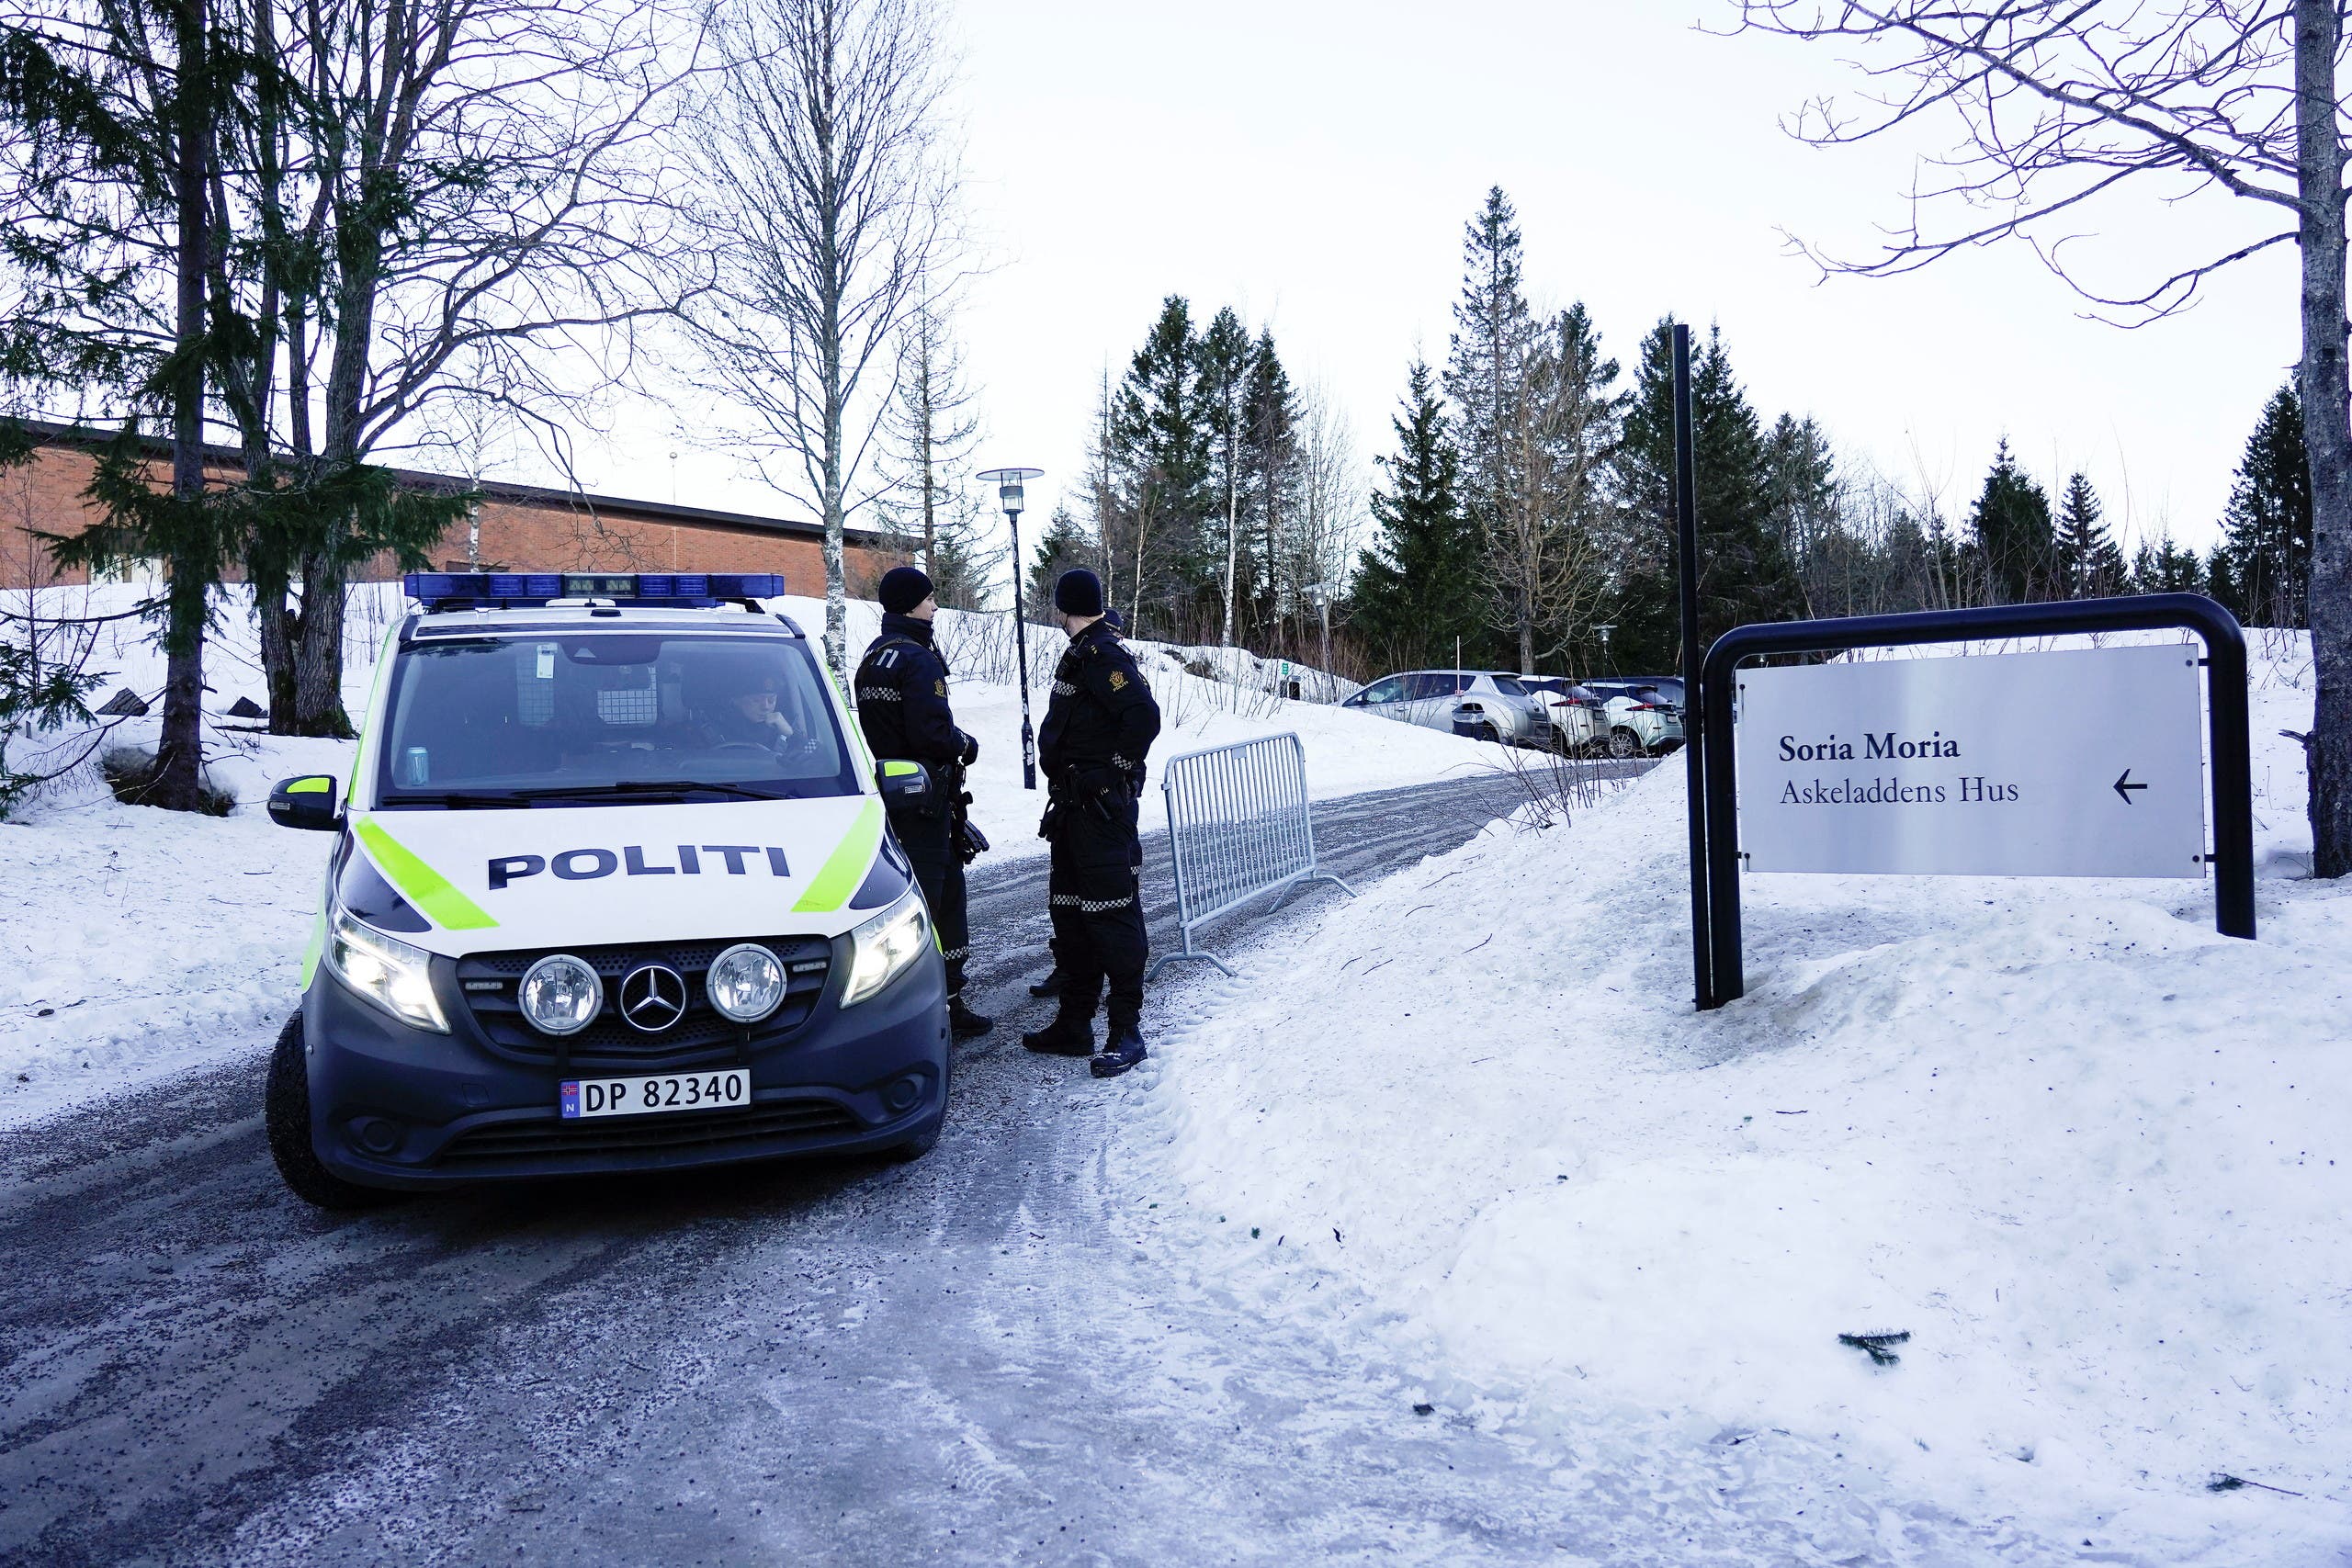 الشرطة النرويجية تغلق الشارع المؤدي لفندق "سوريا موريا"